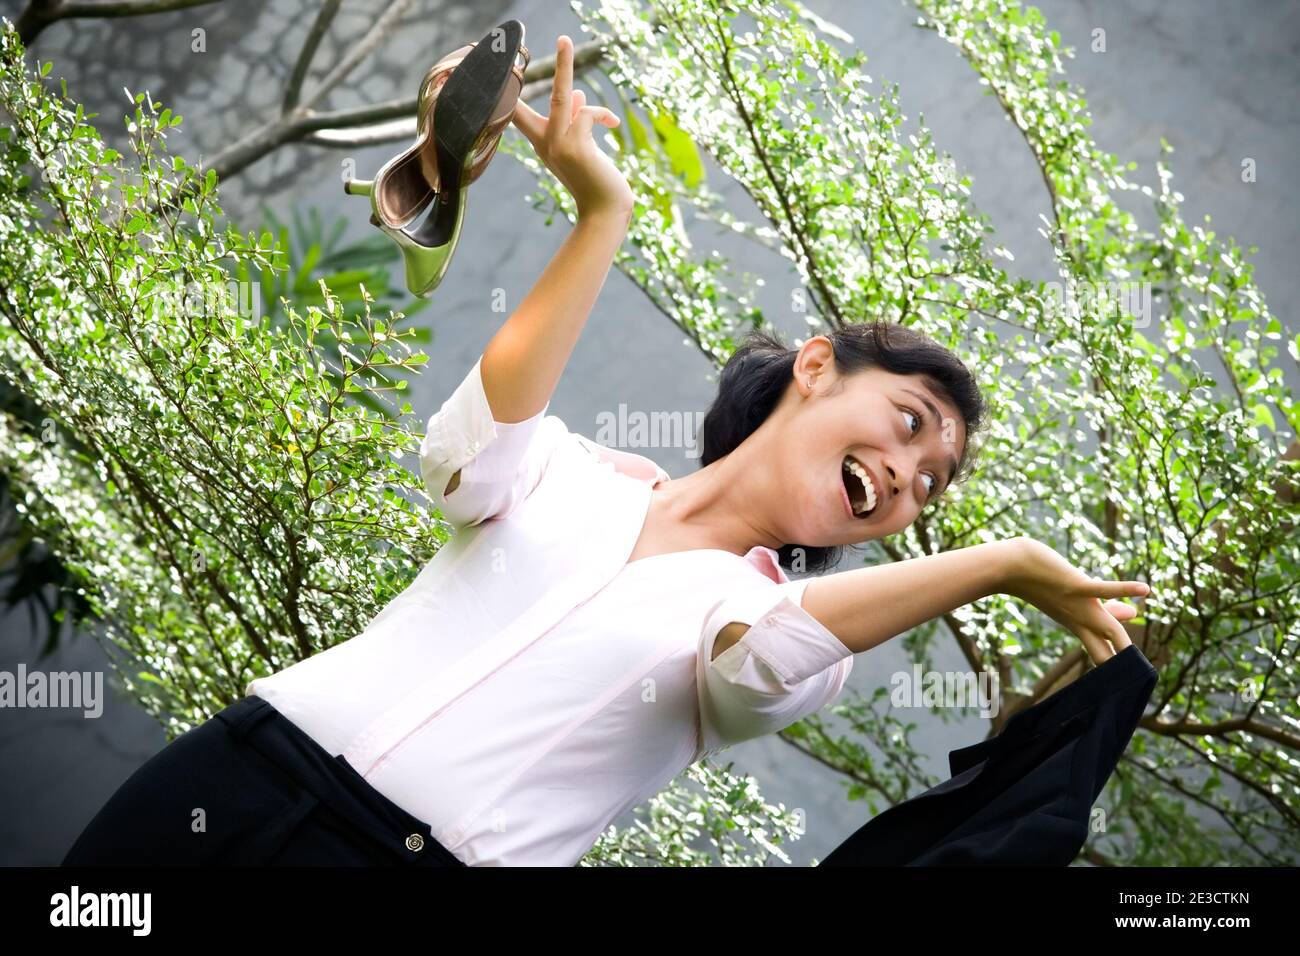 ritratto concettuale di bella donna d'affari asiatica in ambiente naturale, sembra godere il suo tempo di pausa dalla vita impegnata e stressante in ufficio/busi Foto Stock